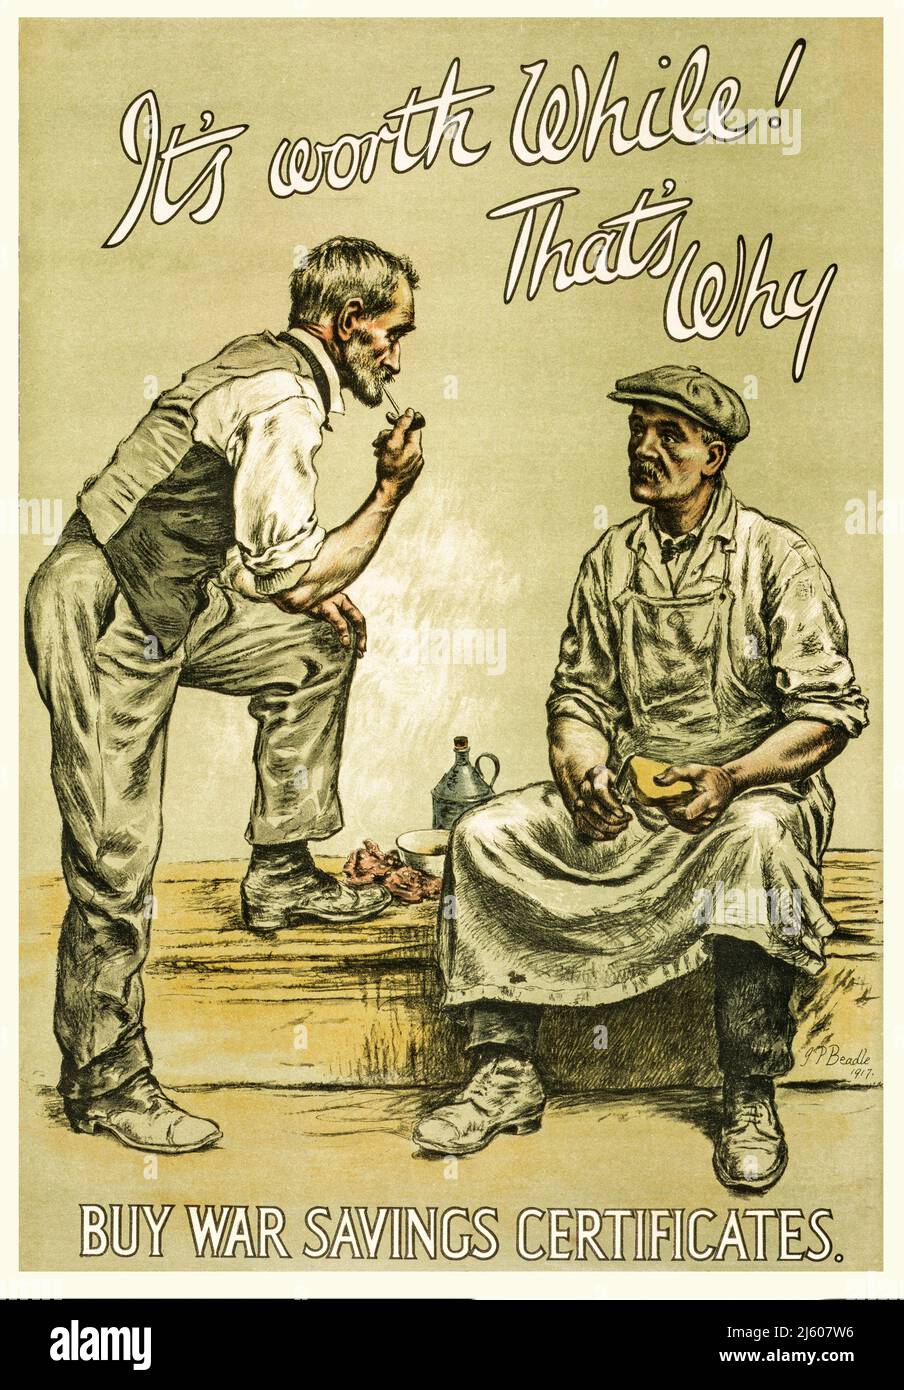 Un manifesto pubblicitario britannico del 1917, per i legami di guerra con lo slogan 'vale la pena mentre! Ecco perché.' con due uomini della classe operaia impegnati in conversazione, uno che fuma una pipa, l'altro che mangia. Artista sconosciuto. Foto Stock